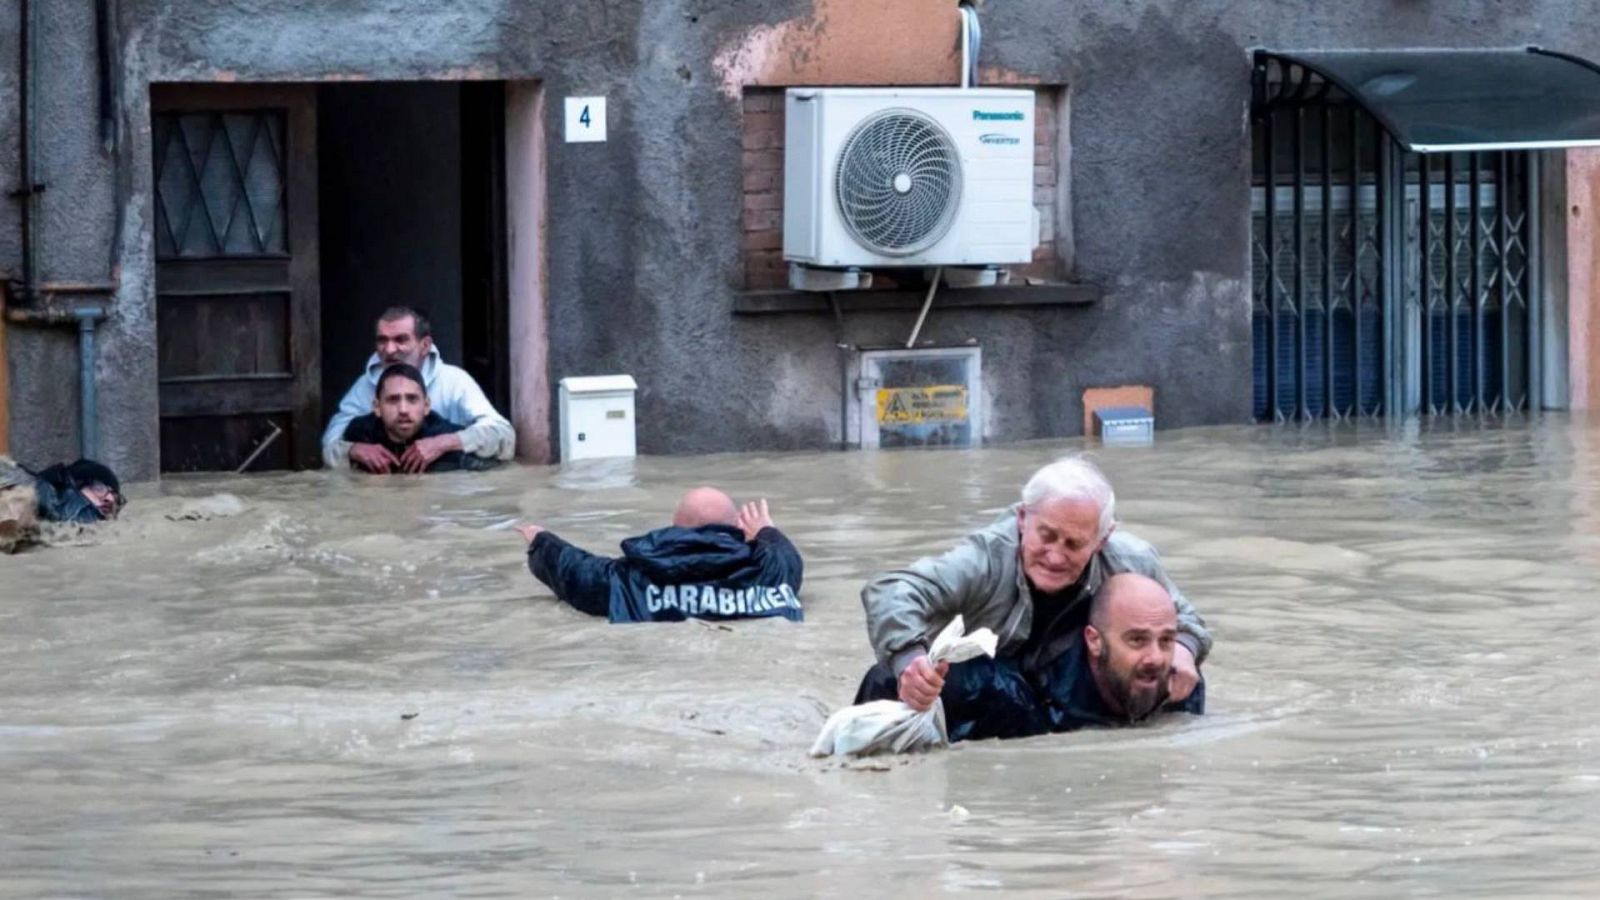 Miembros de la gendarmería de Italia ayudan a personas afectadas por las inundaciones en la región de Emilia-Romagna